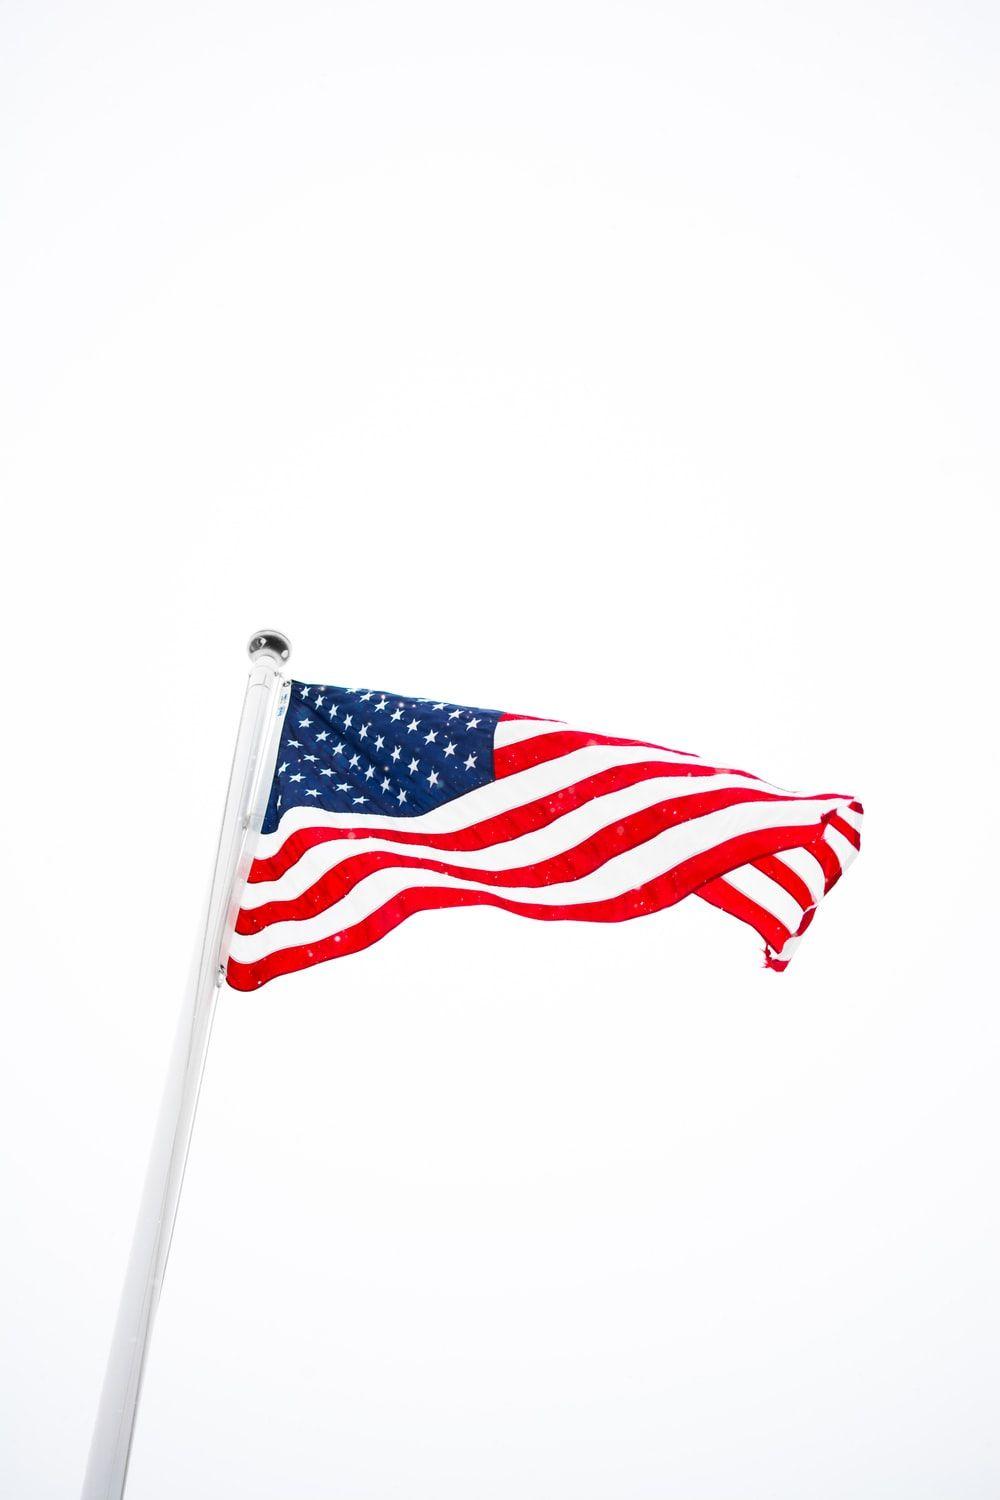 Hình ảnh lá cờ Mỹ 1000x1500: Tải xuống Hình ảnh & Ảnh HD